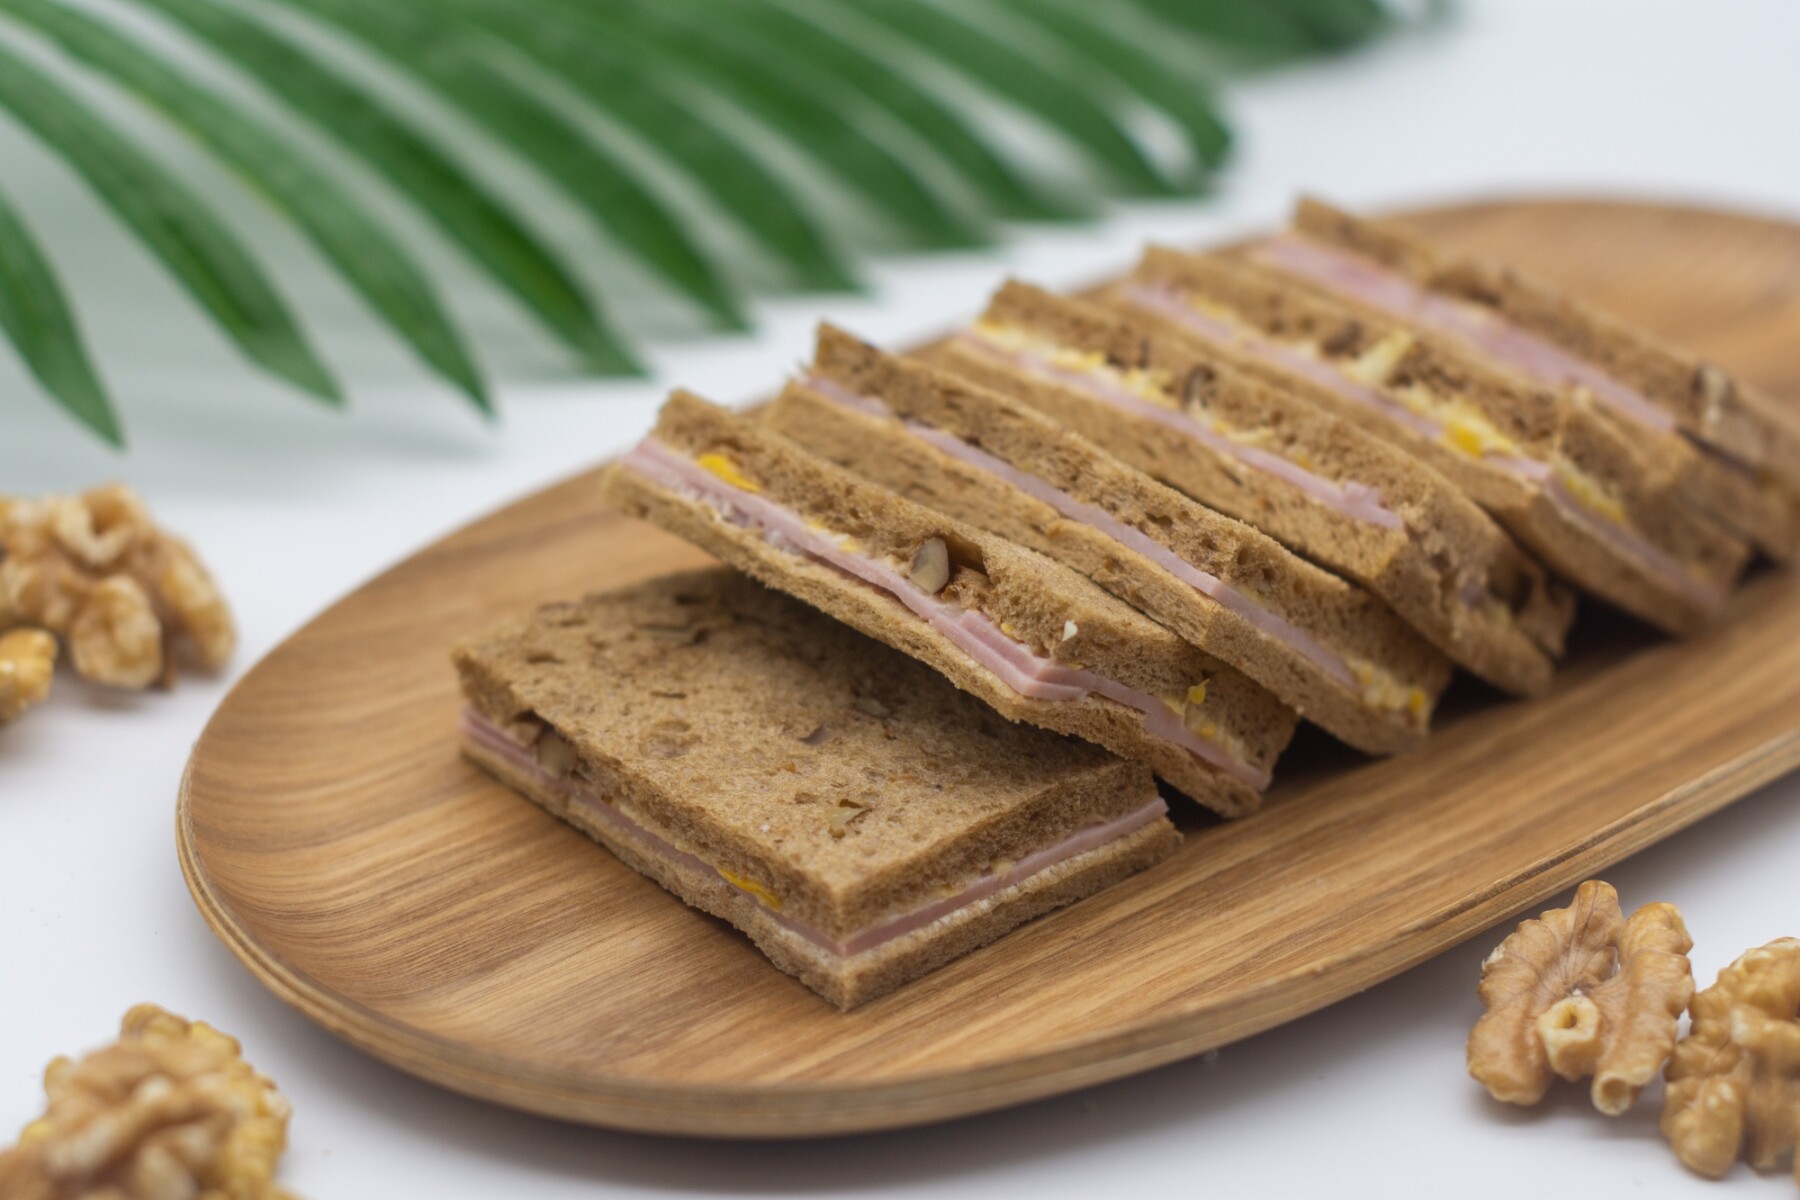 6 Sándwiches de Jamón y Choclo en Pan de Nuez de Copetín - 000 